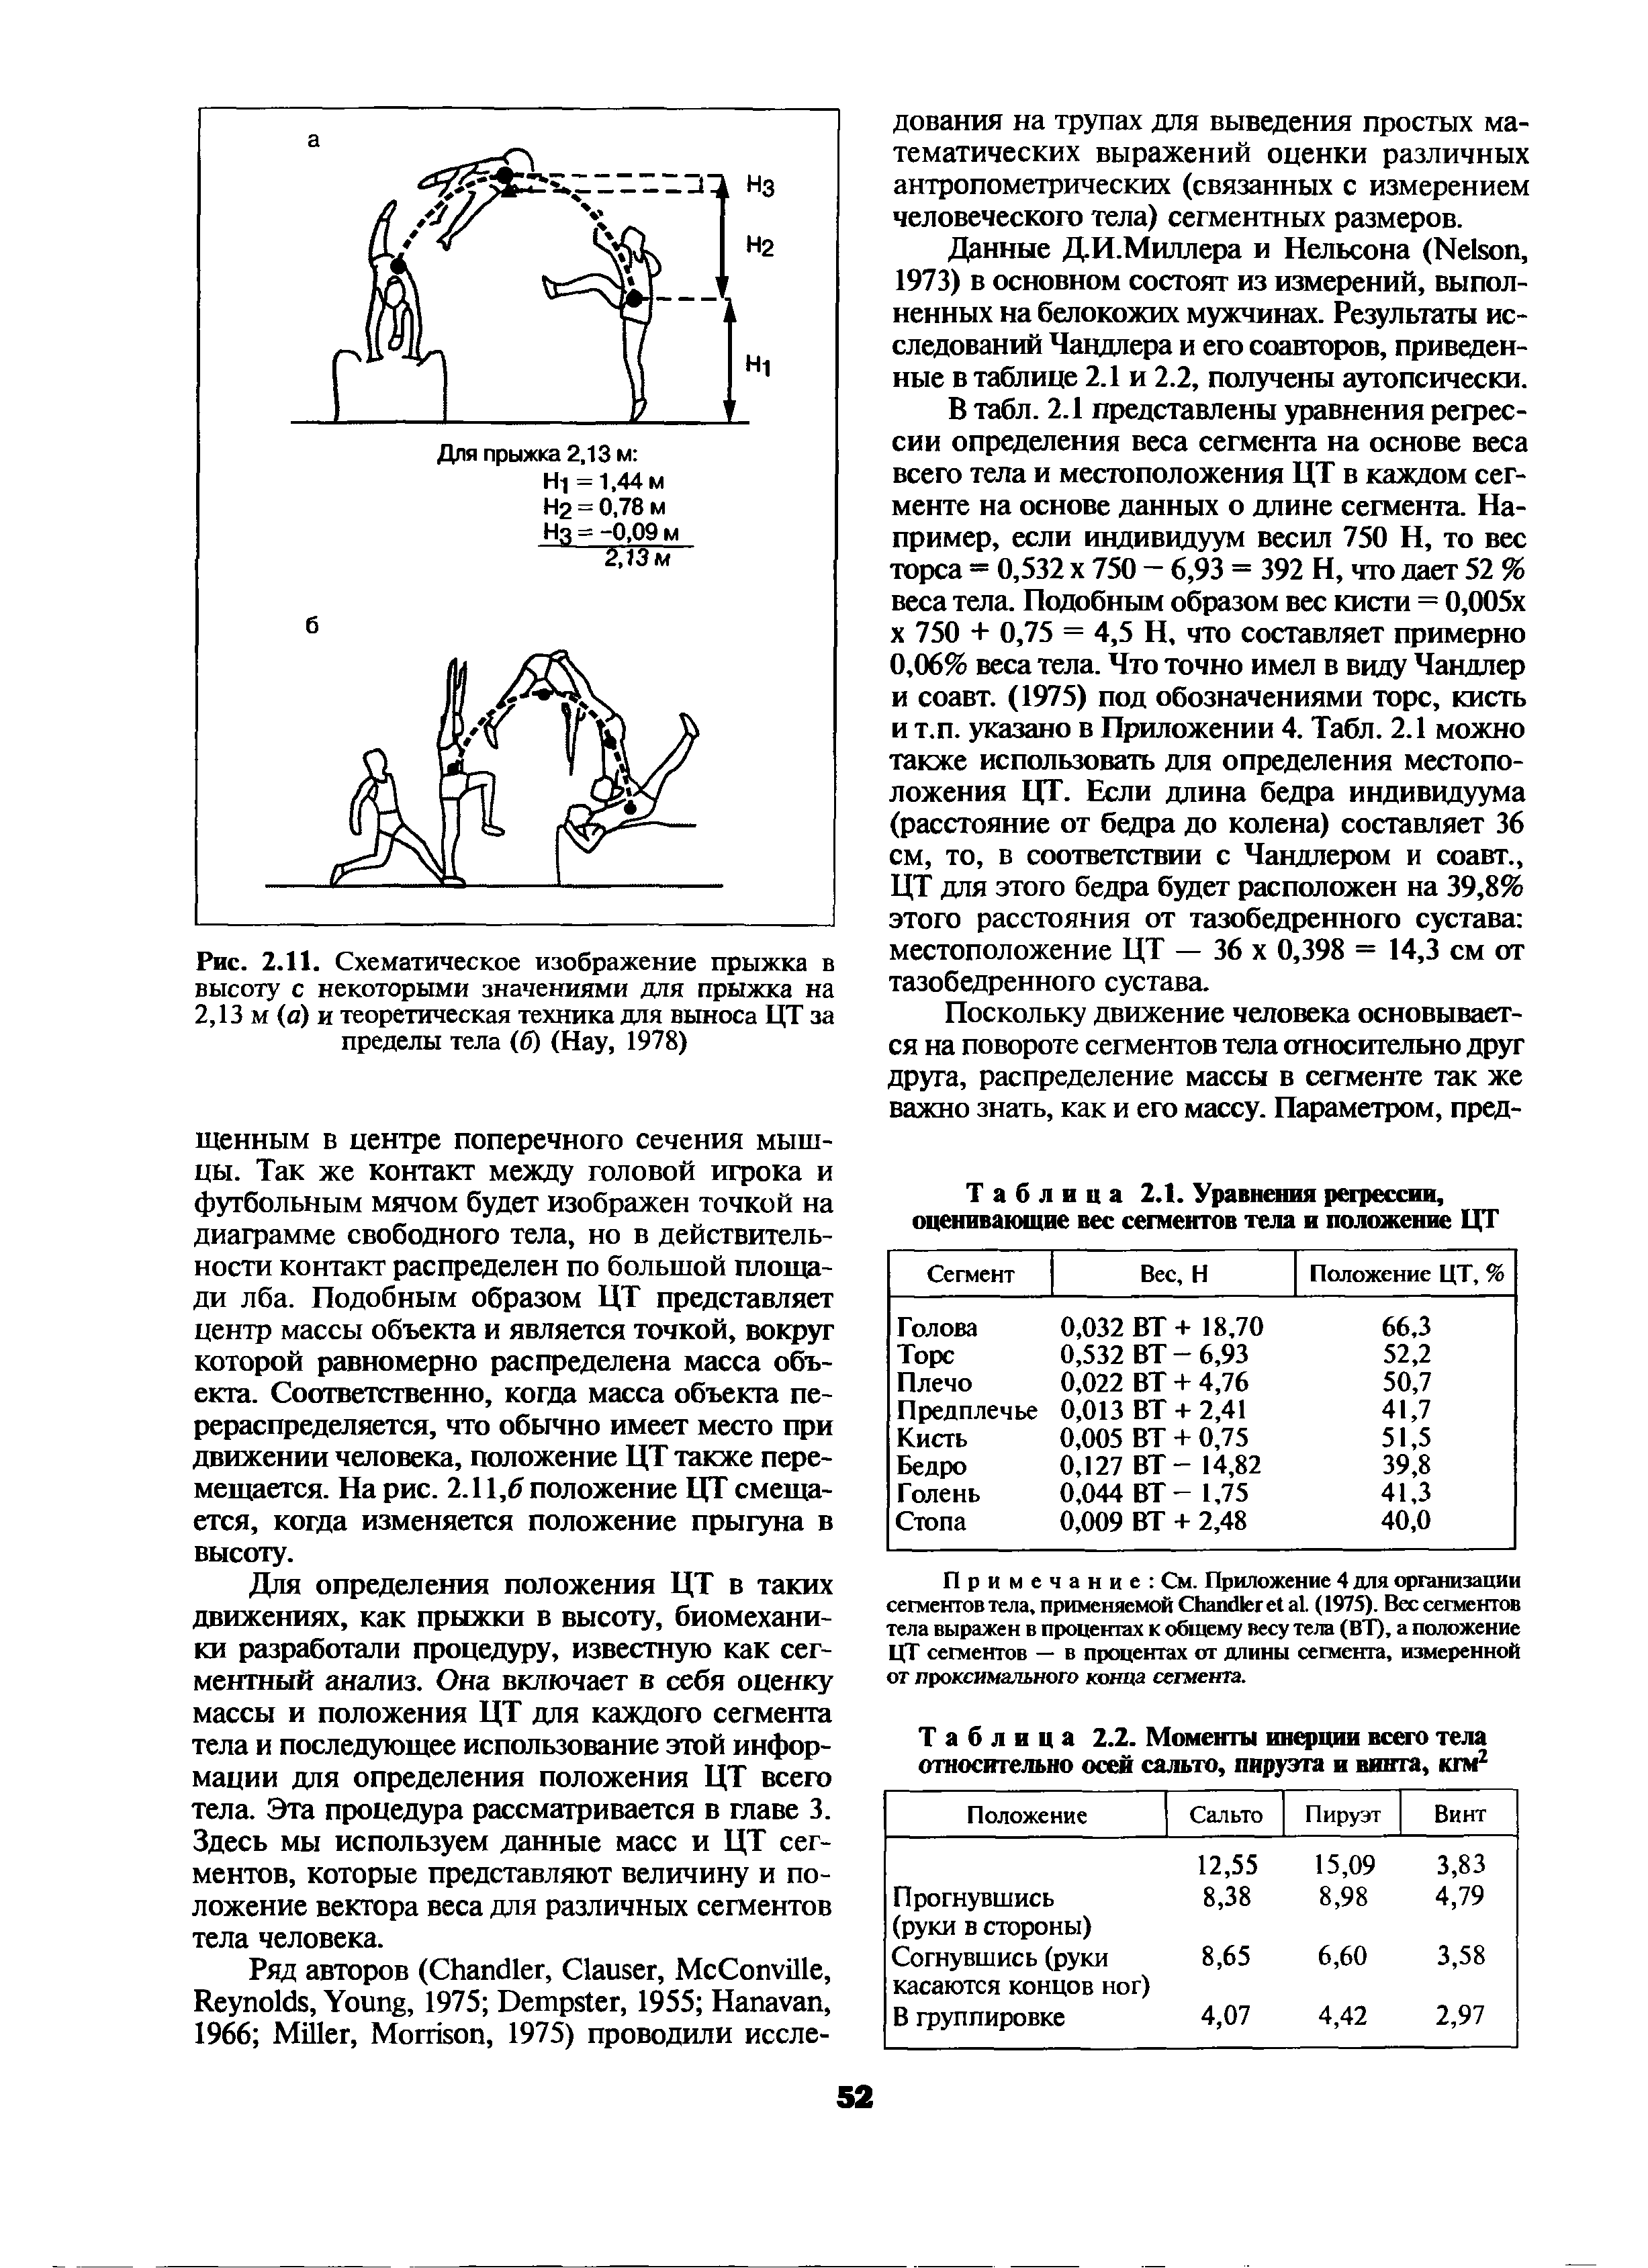 Рис. 2.11. Схематическое изображение прыжка в высоту с некоторыми значениями для прыжка на 2,13 м (а) и теоретическая техника для выноса ЦТ за пределы тела (б) (Нау, 1978)...